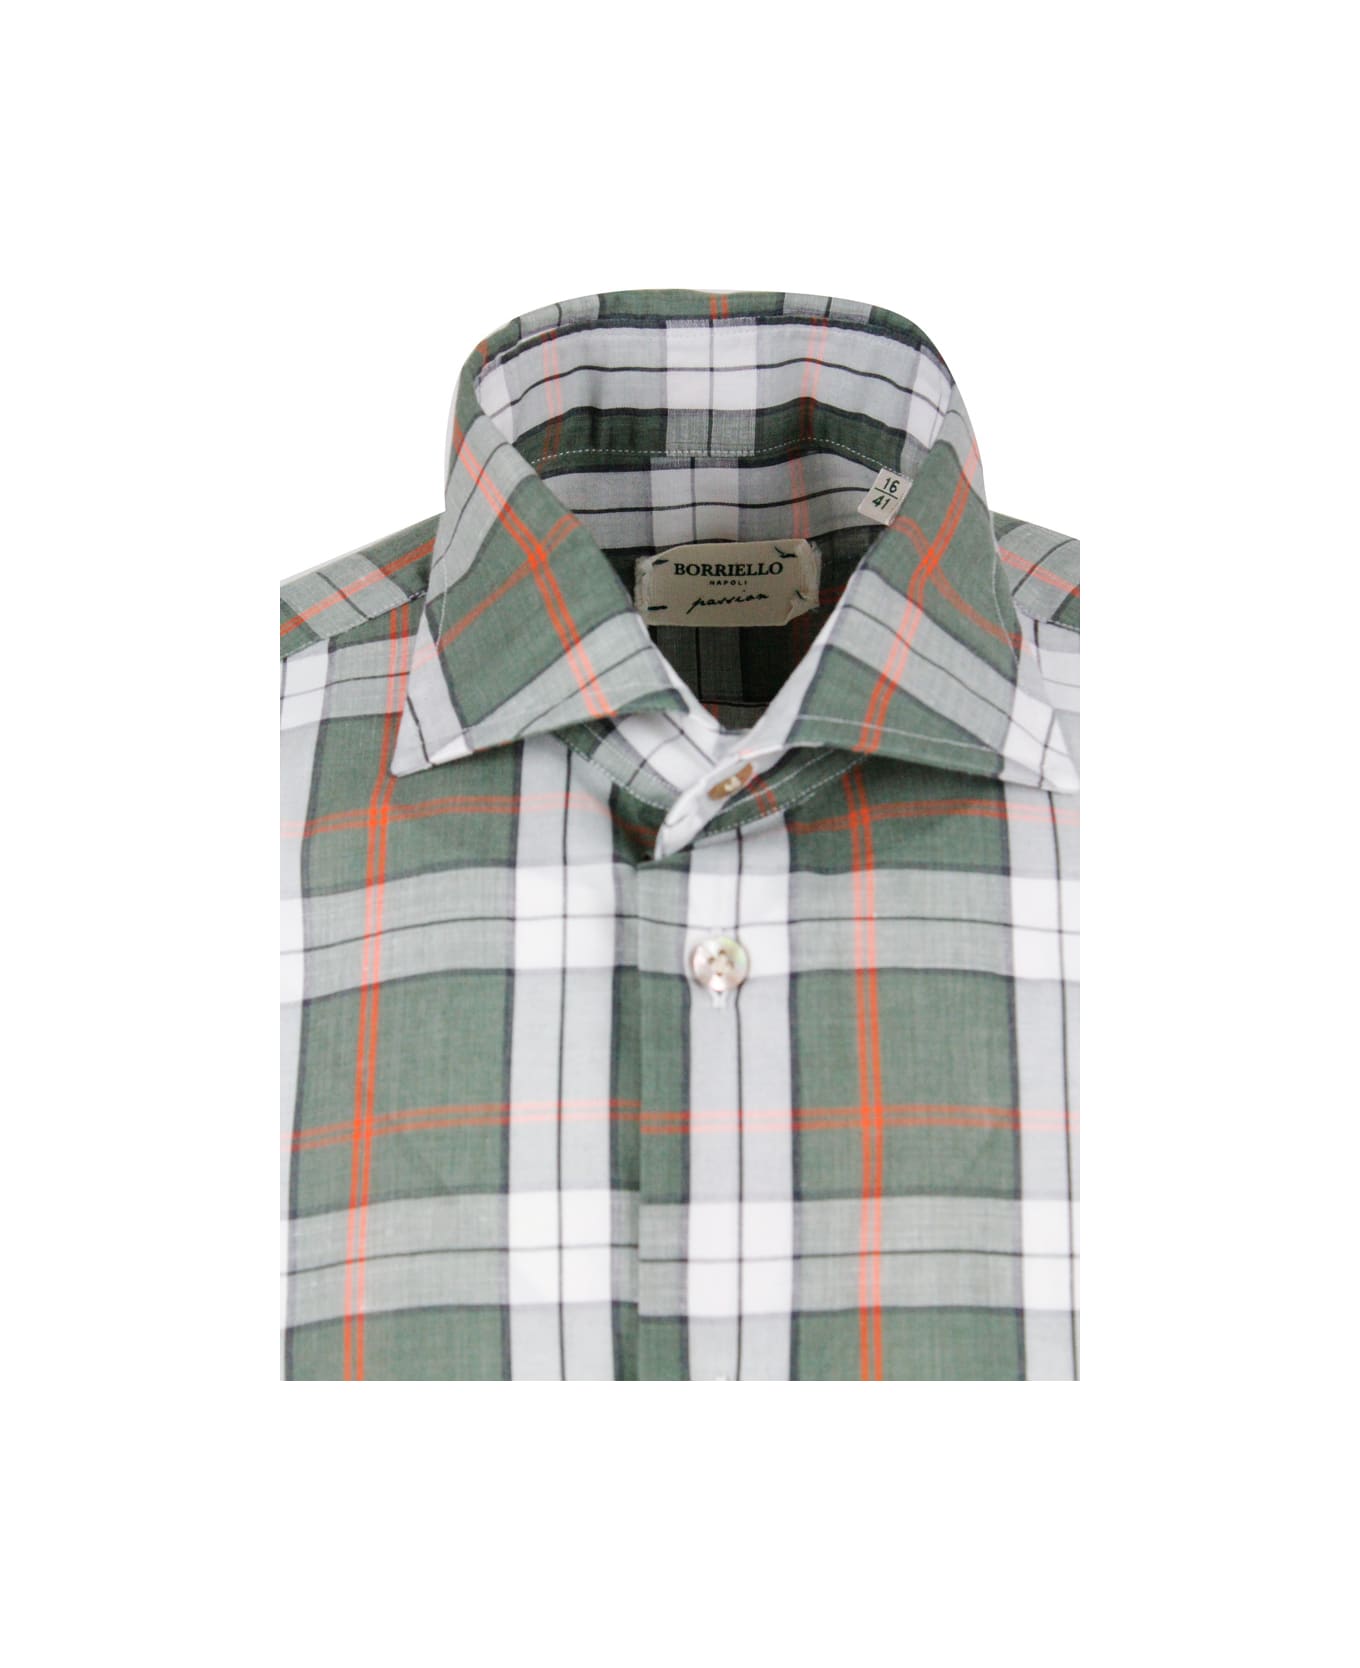 Borriello Napoli Checked Shirt In Cotton And Linen - Green